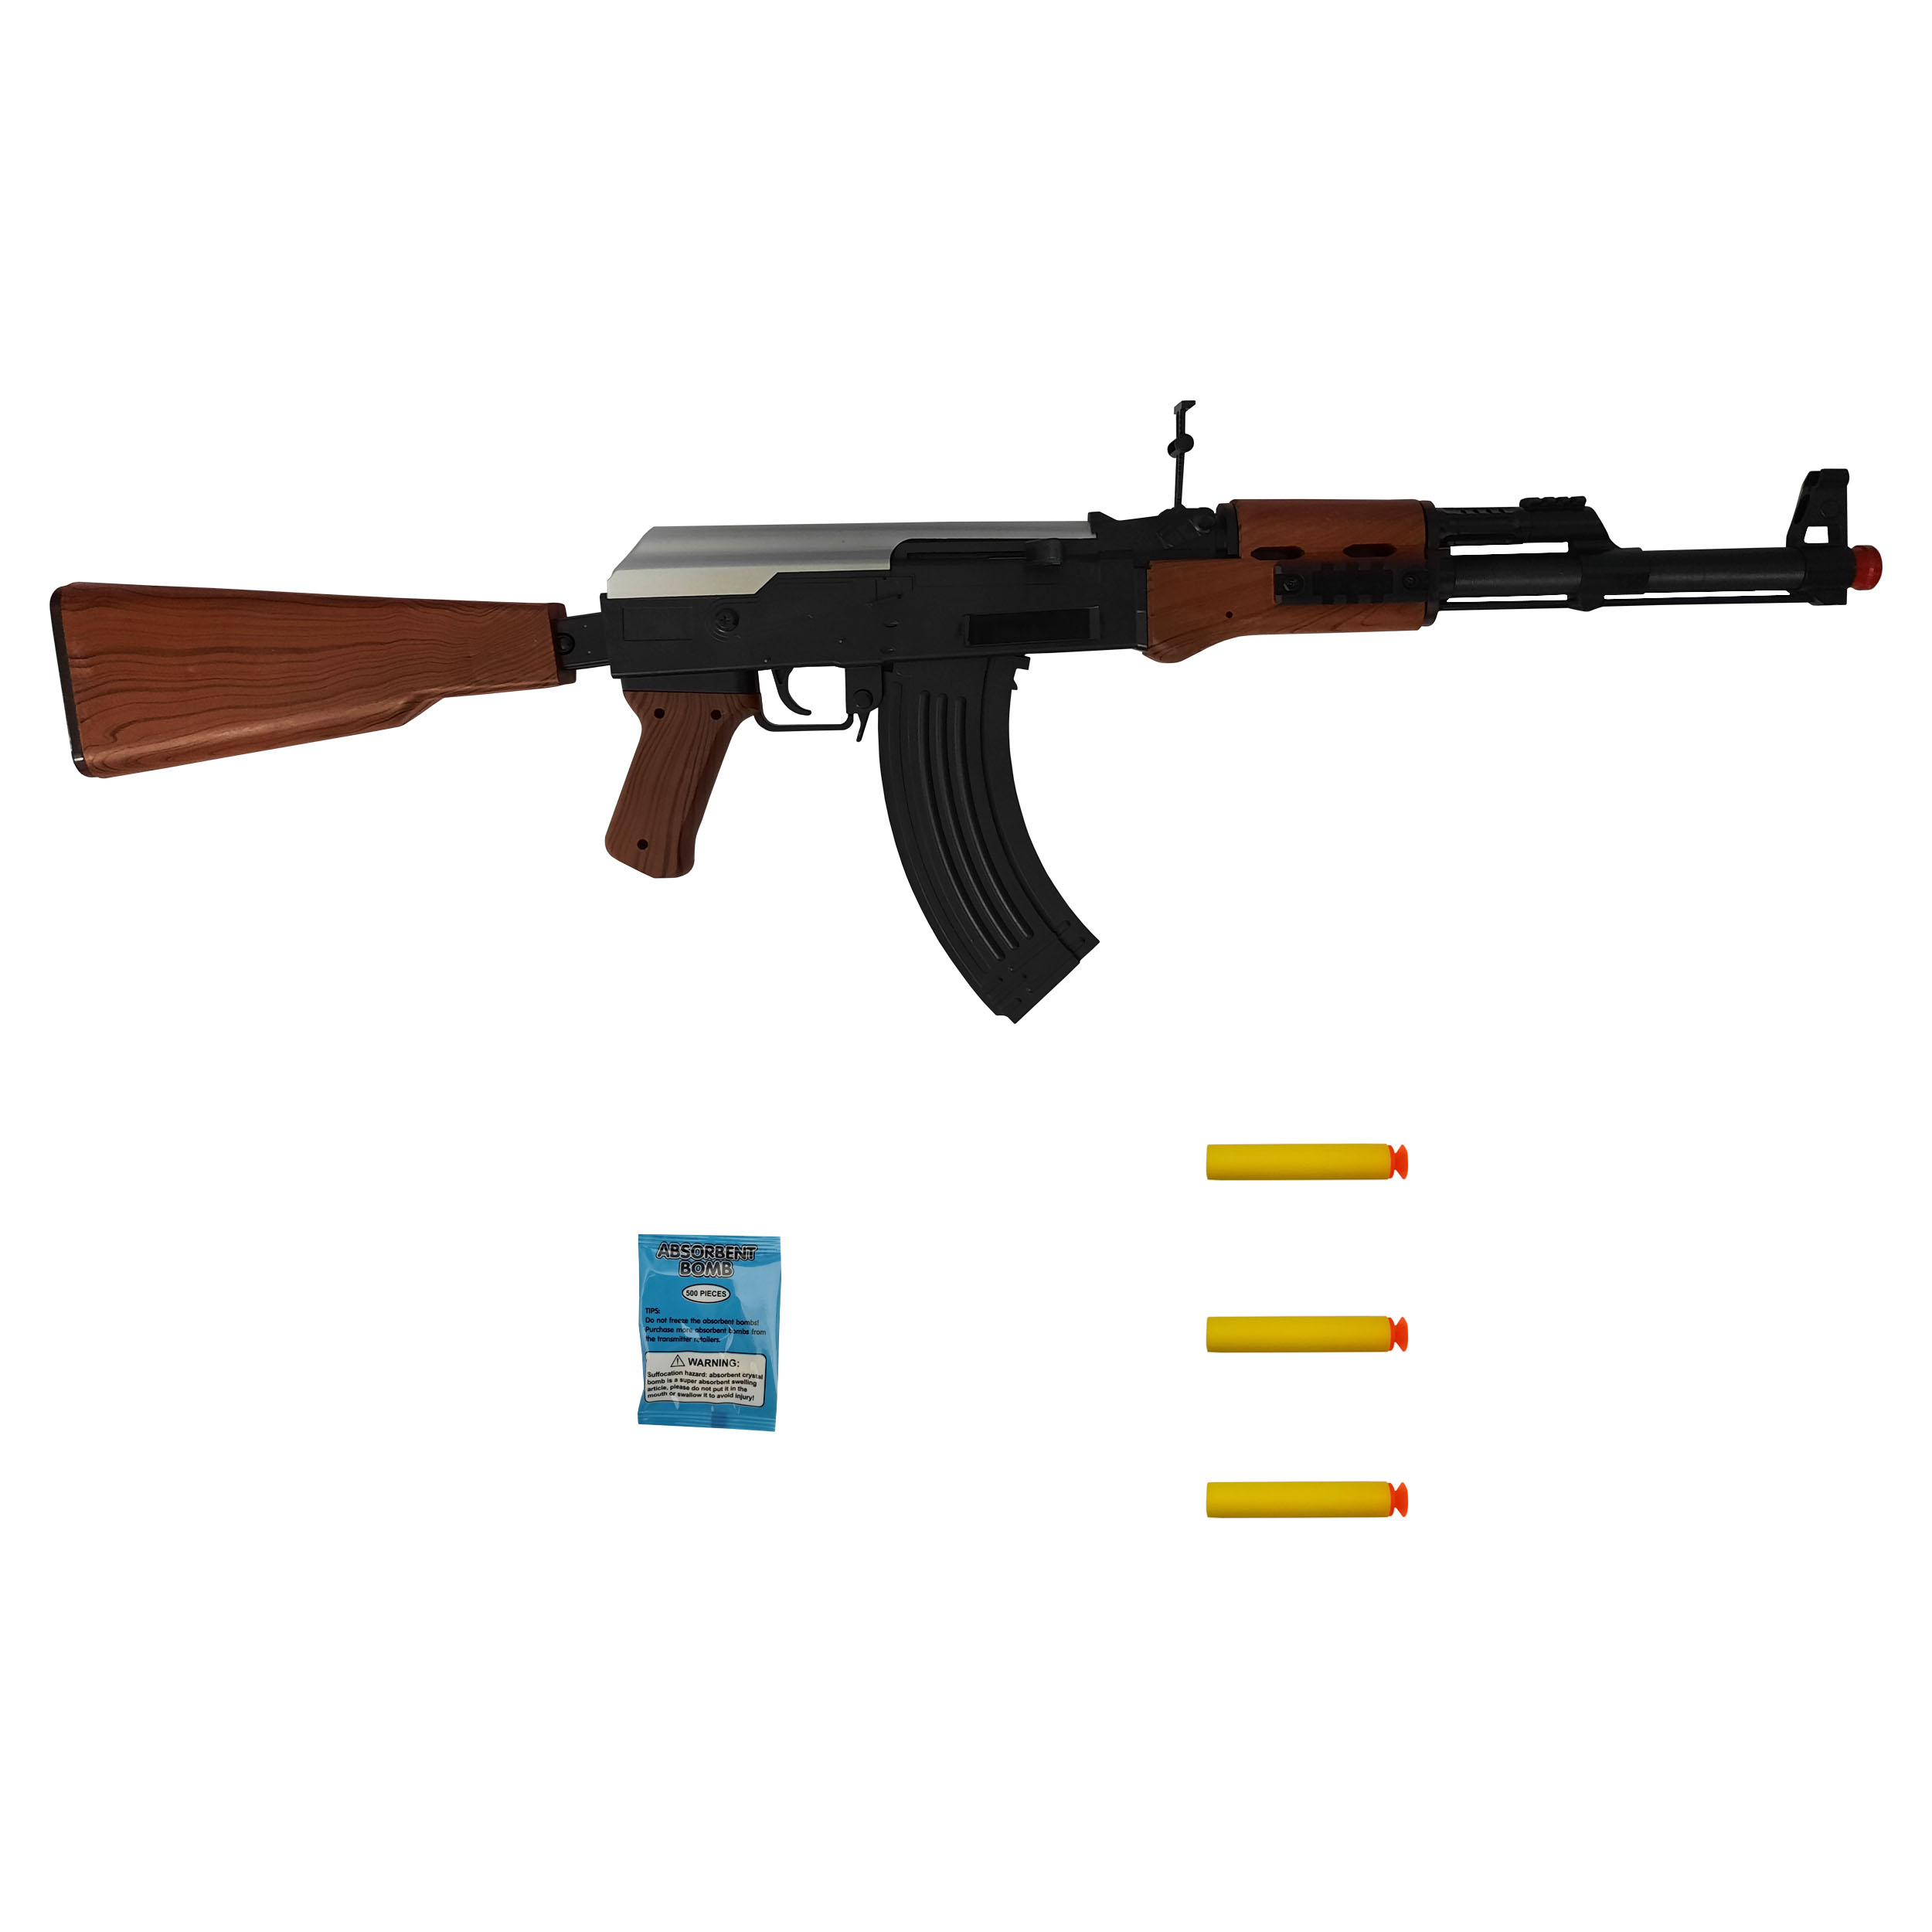 تفنگ بازی طرح کلاشینکف مدل AK123 کد 500 مجموعه 5 عددی – فروشگاه اینترنتیسرزمین اسباب بازی